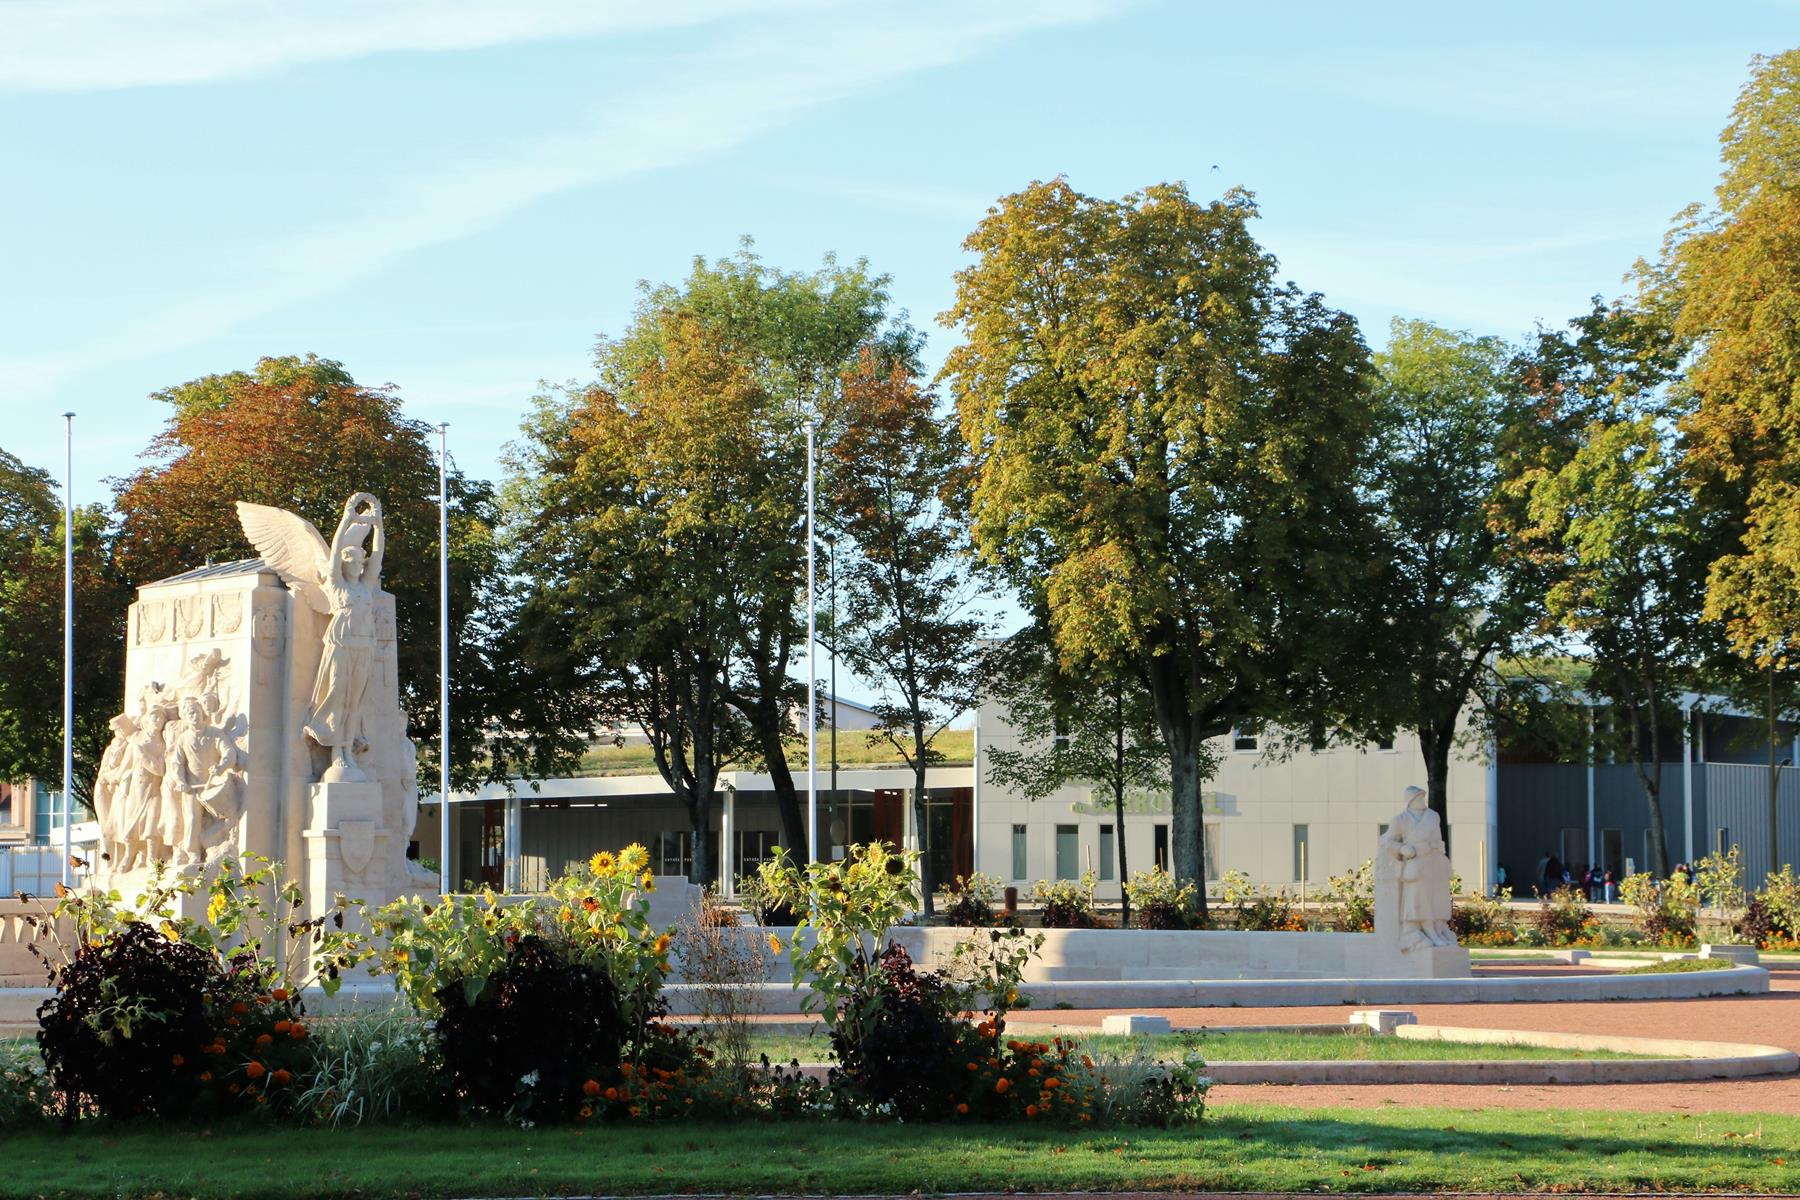 Piscine et Monument aux morts 10 2019 (2)